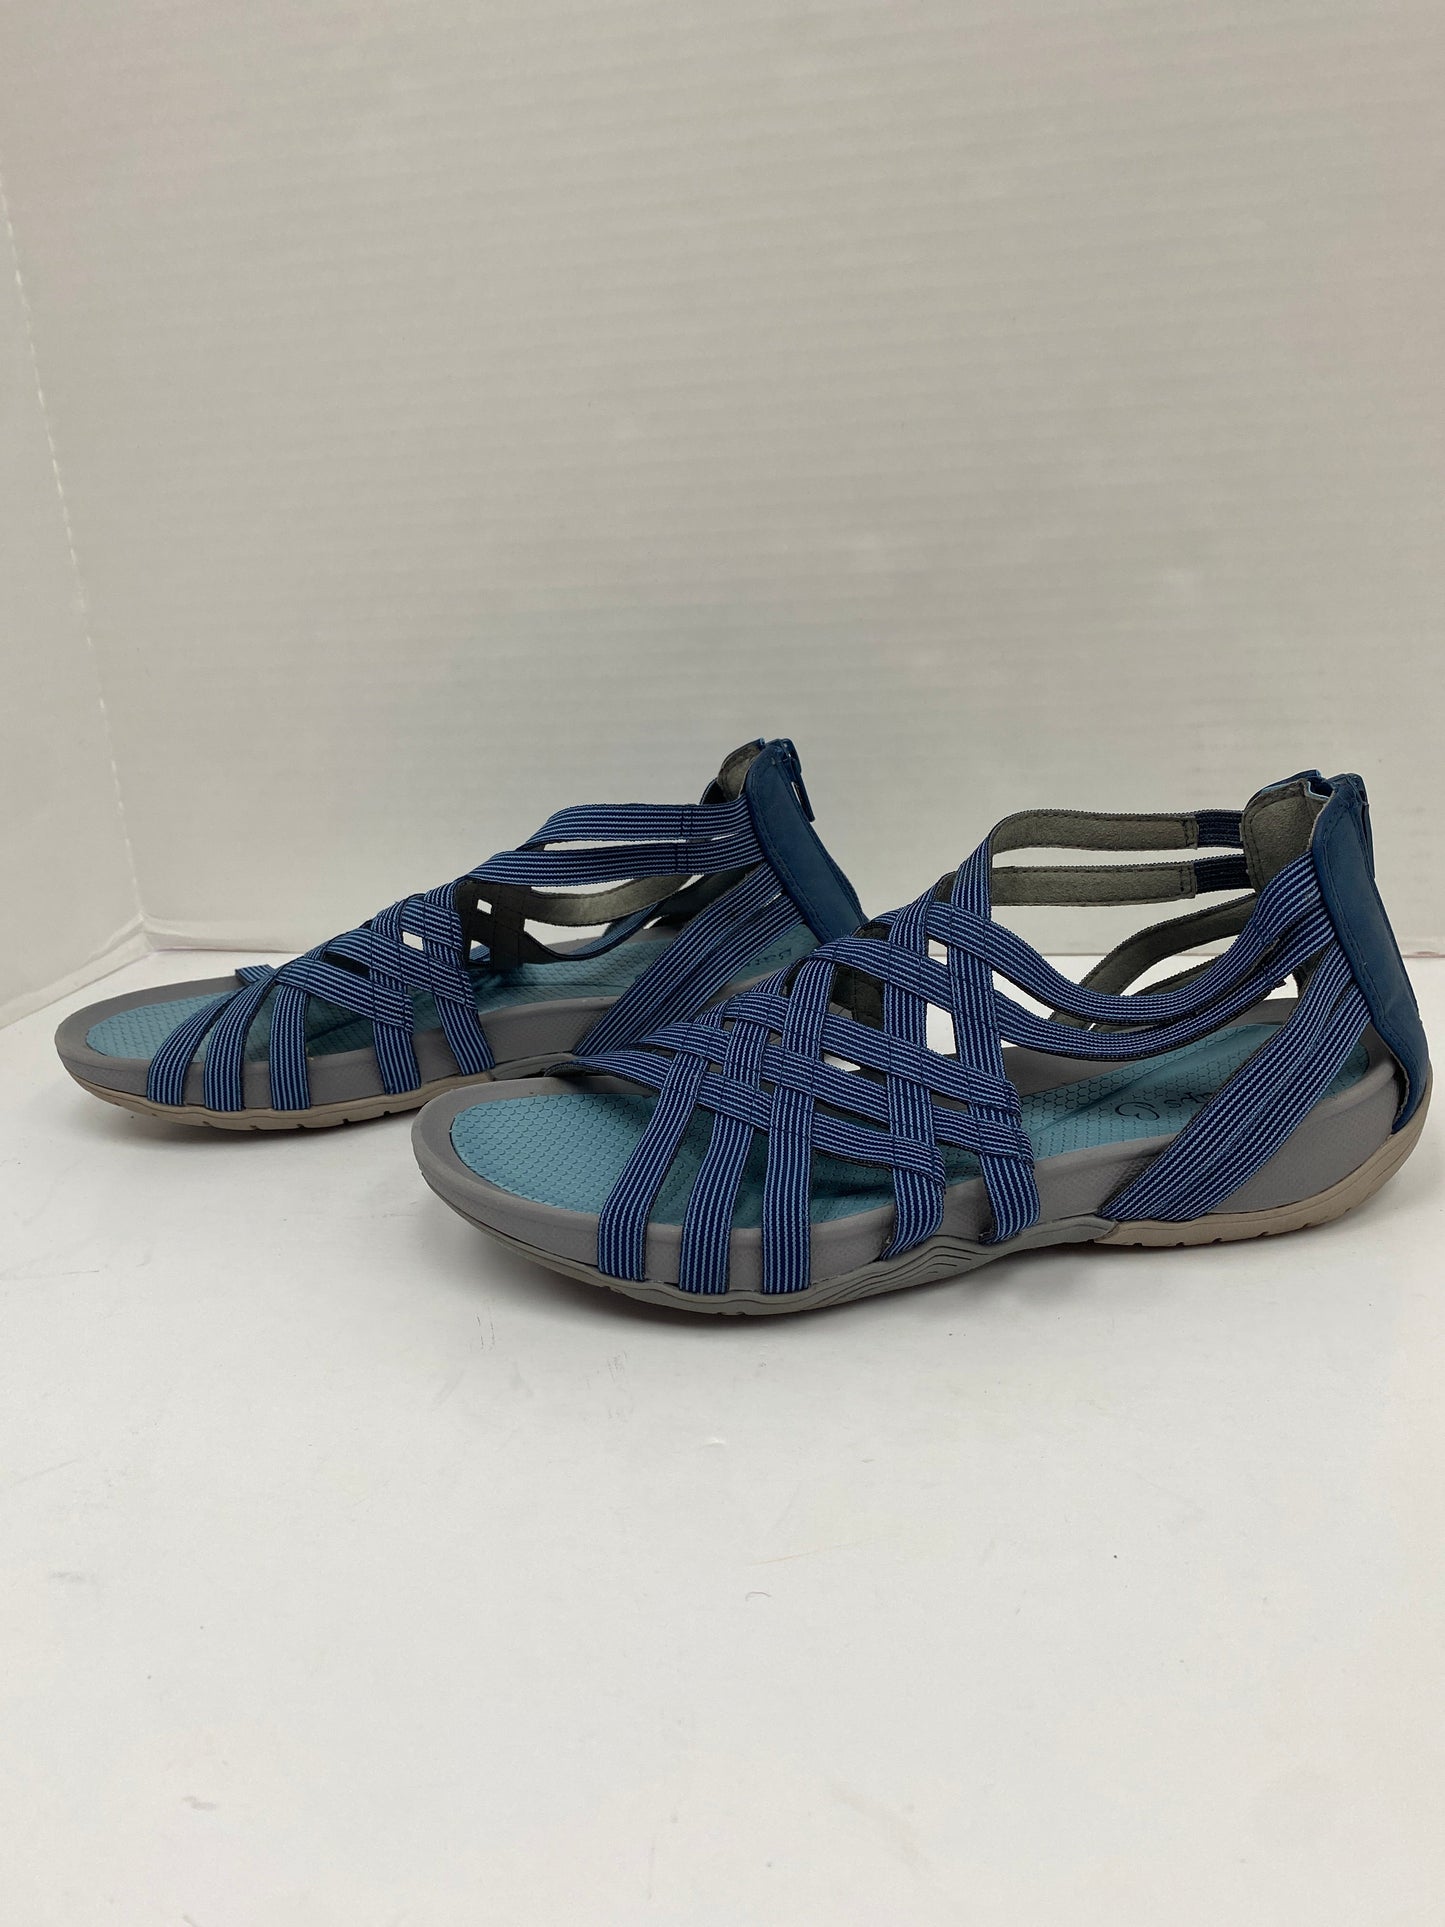 Blue Sandals Flats Bare Traps, Size 7